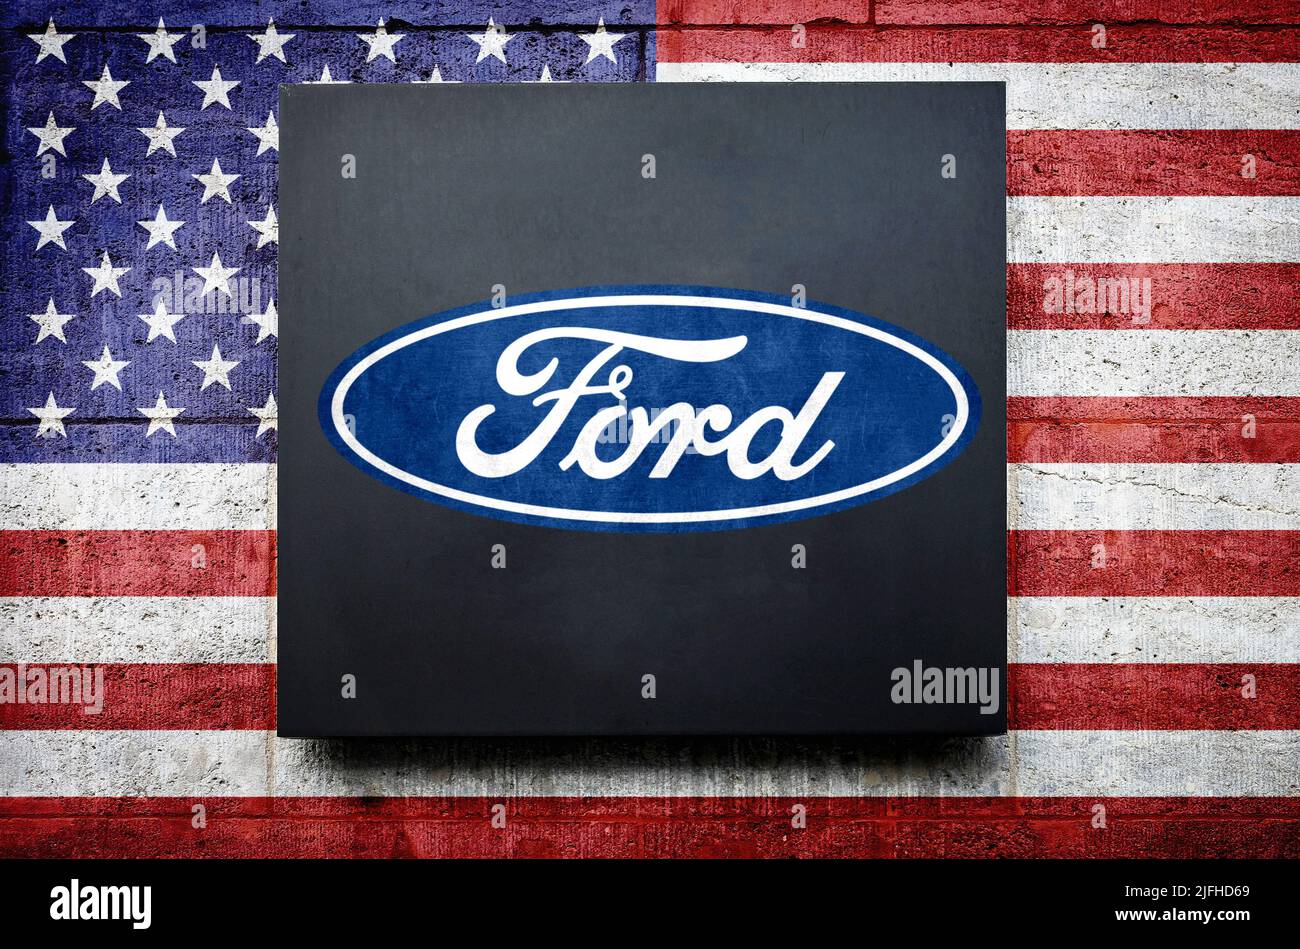 Ford Motor Company Stock Photo